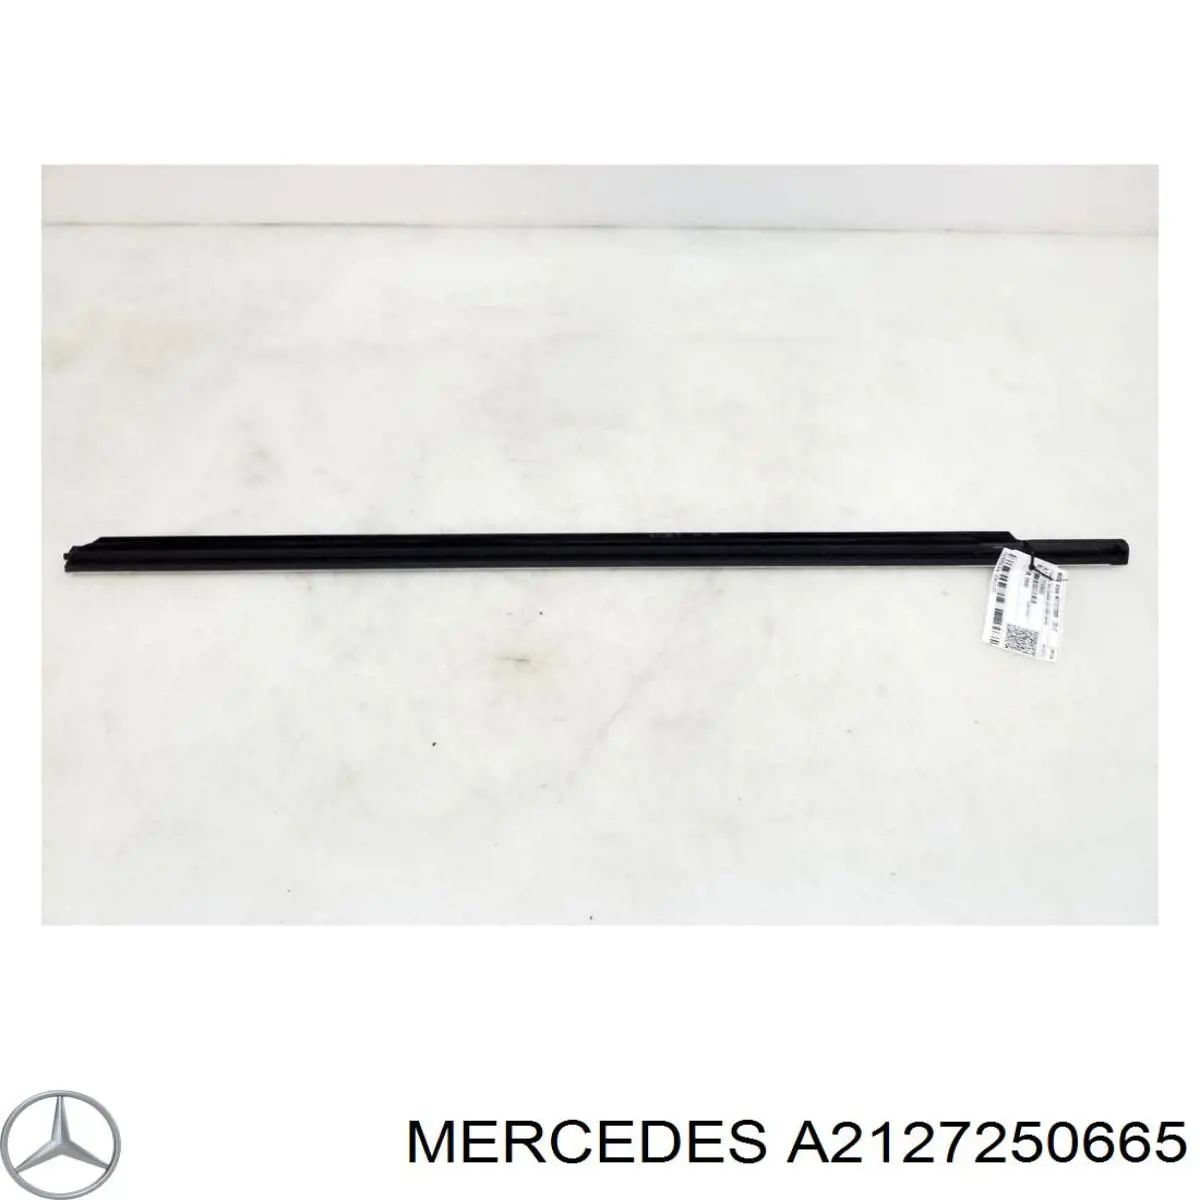 2127250665 Mercedes уплотнитель стекла двери передней правой внешний (планка)